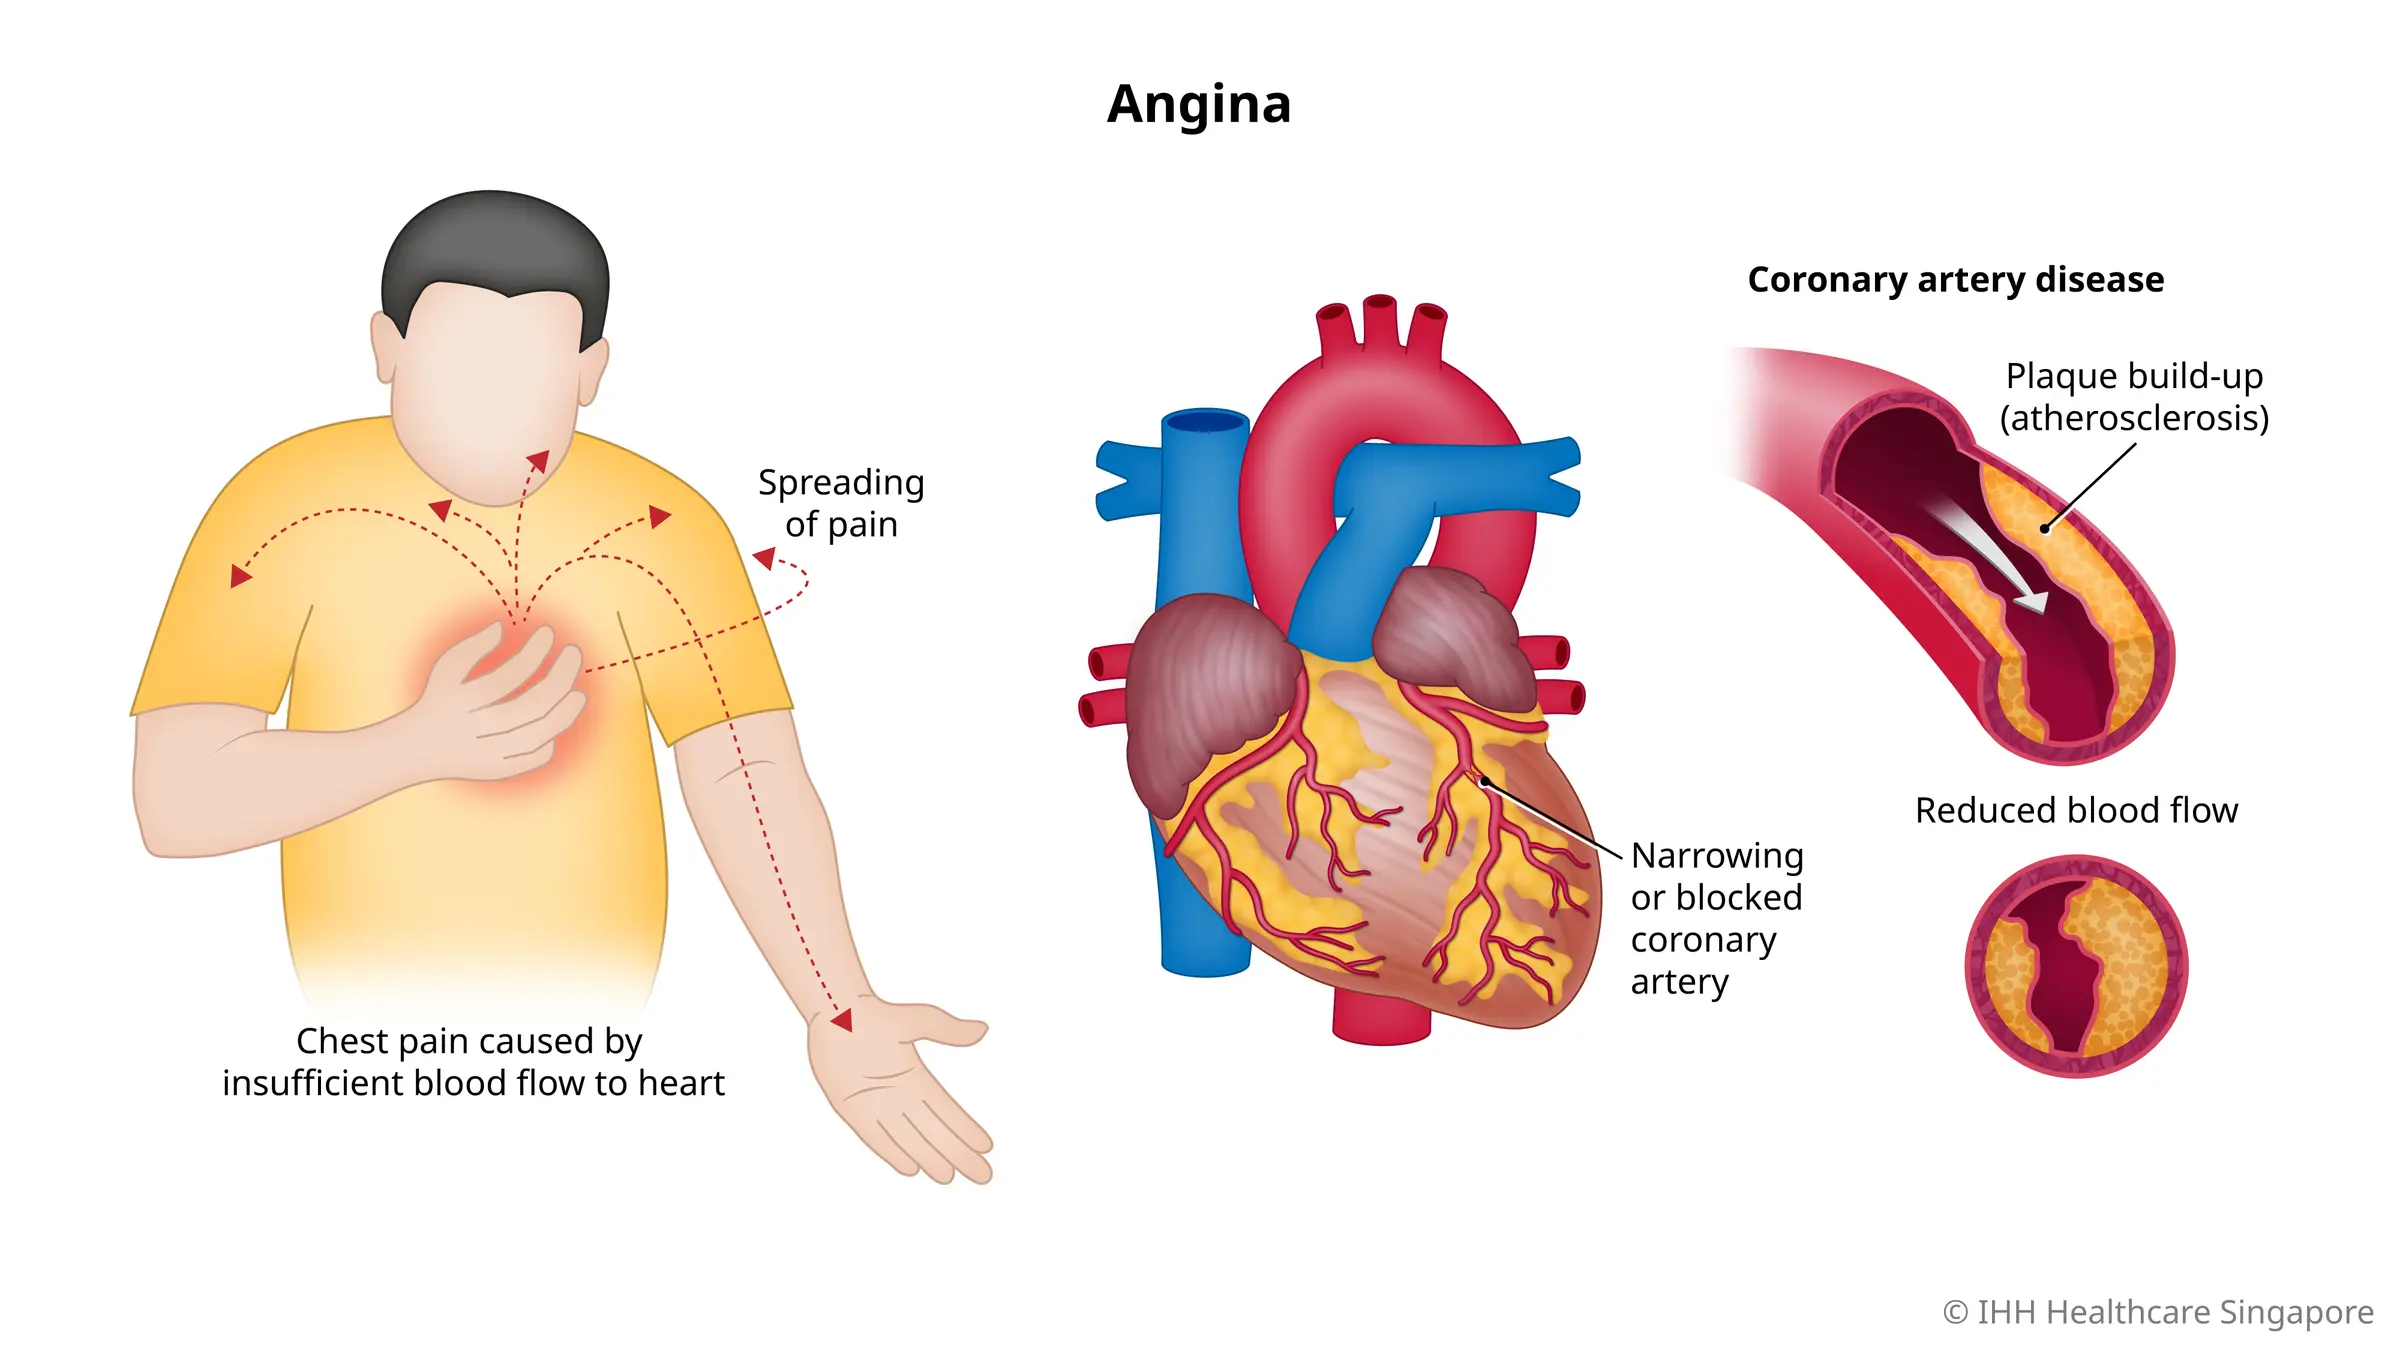 由于冠状动脉狭窄或阻塞而导致流向心脏的血流不足时便会发生心绞痛（胸痛）。